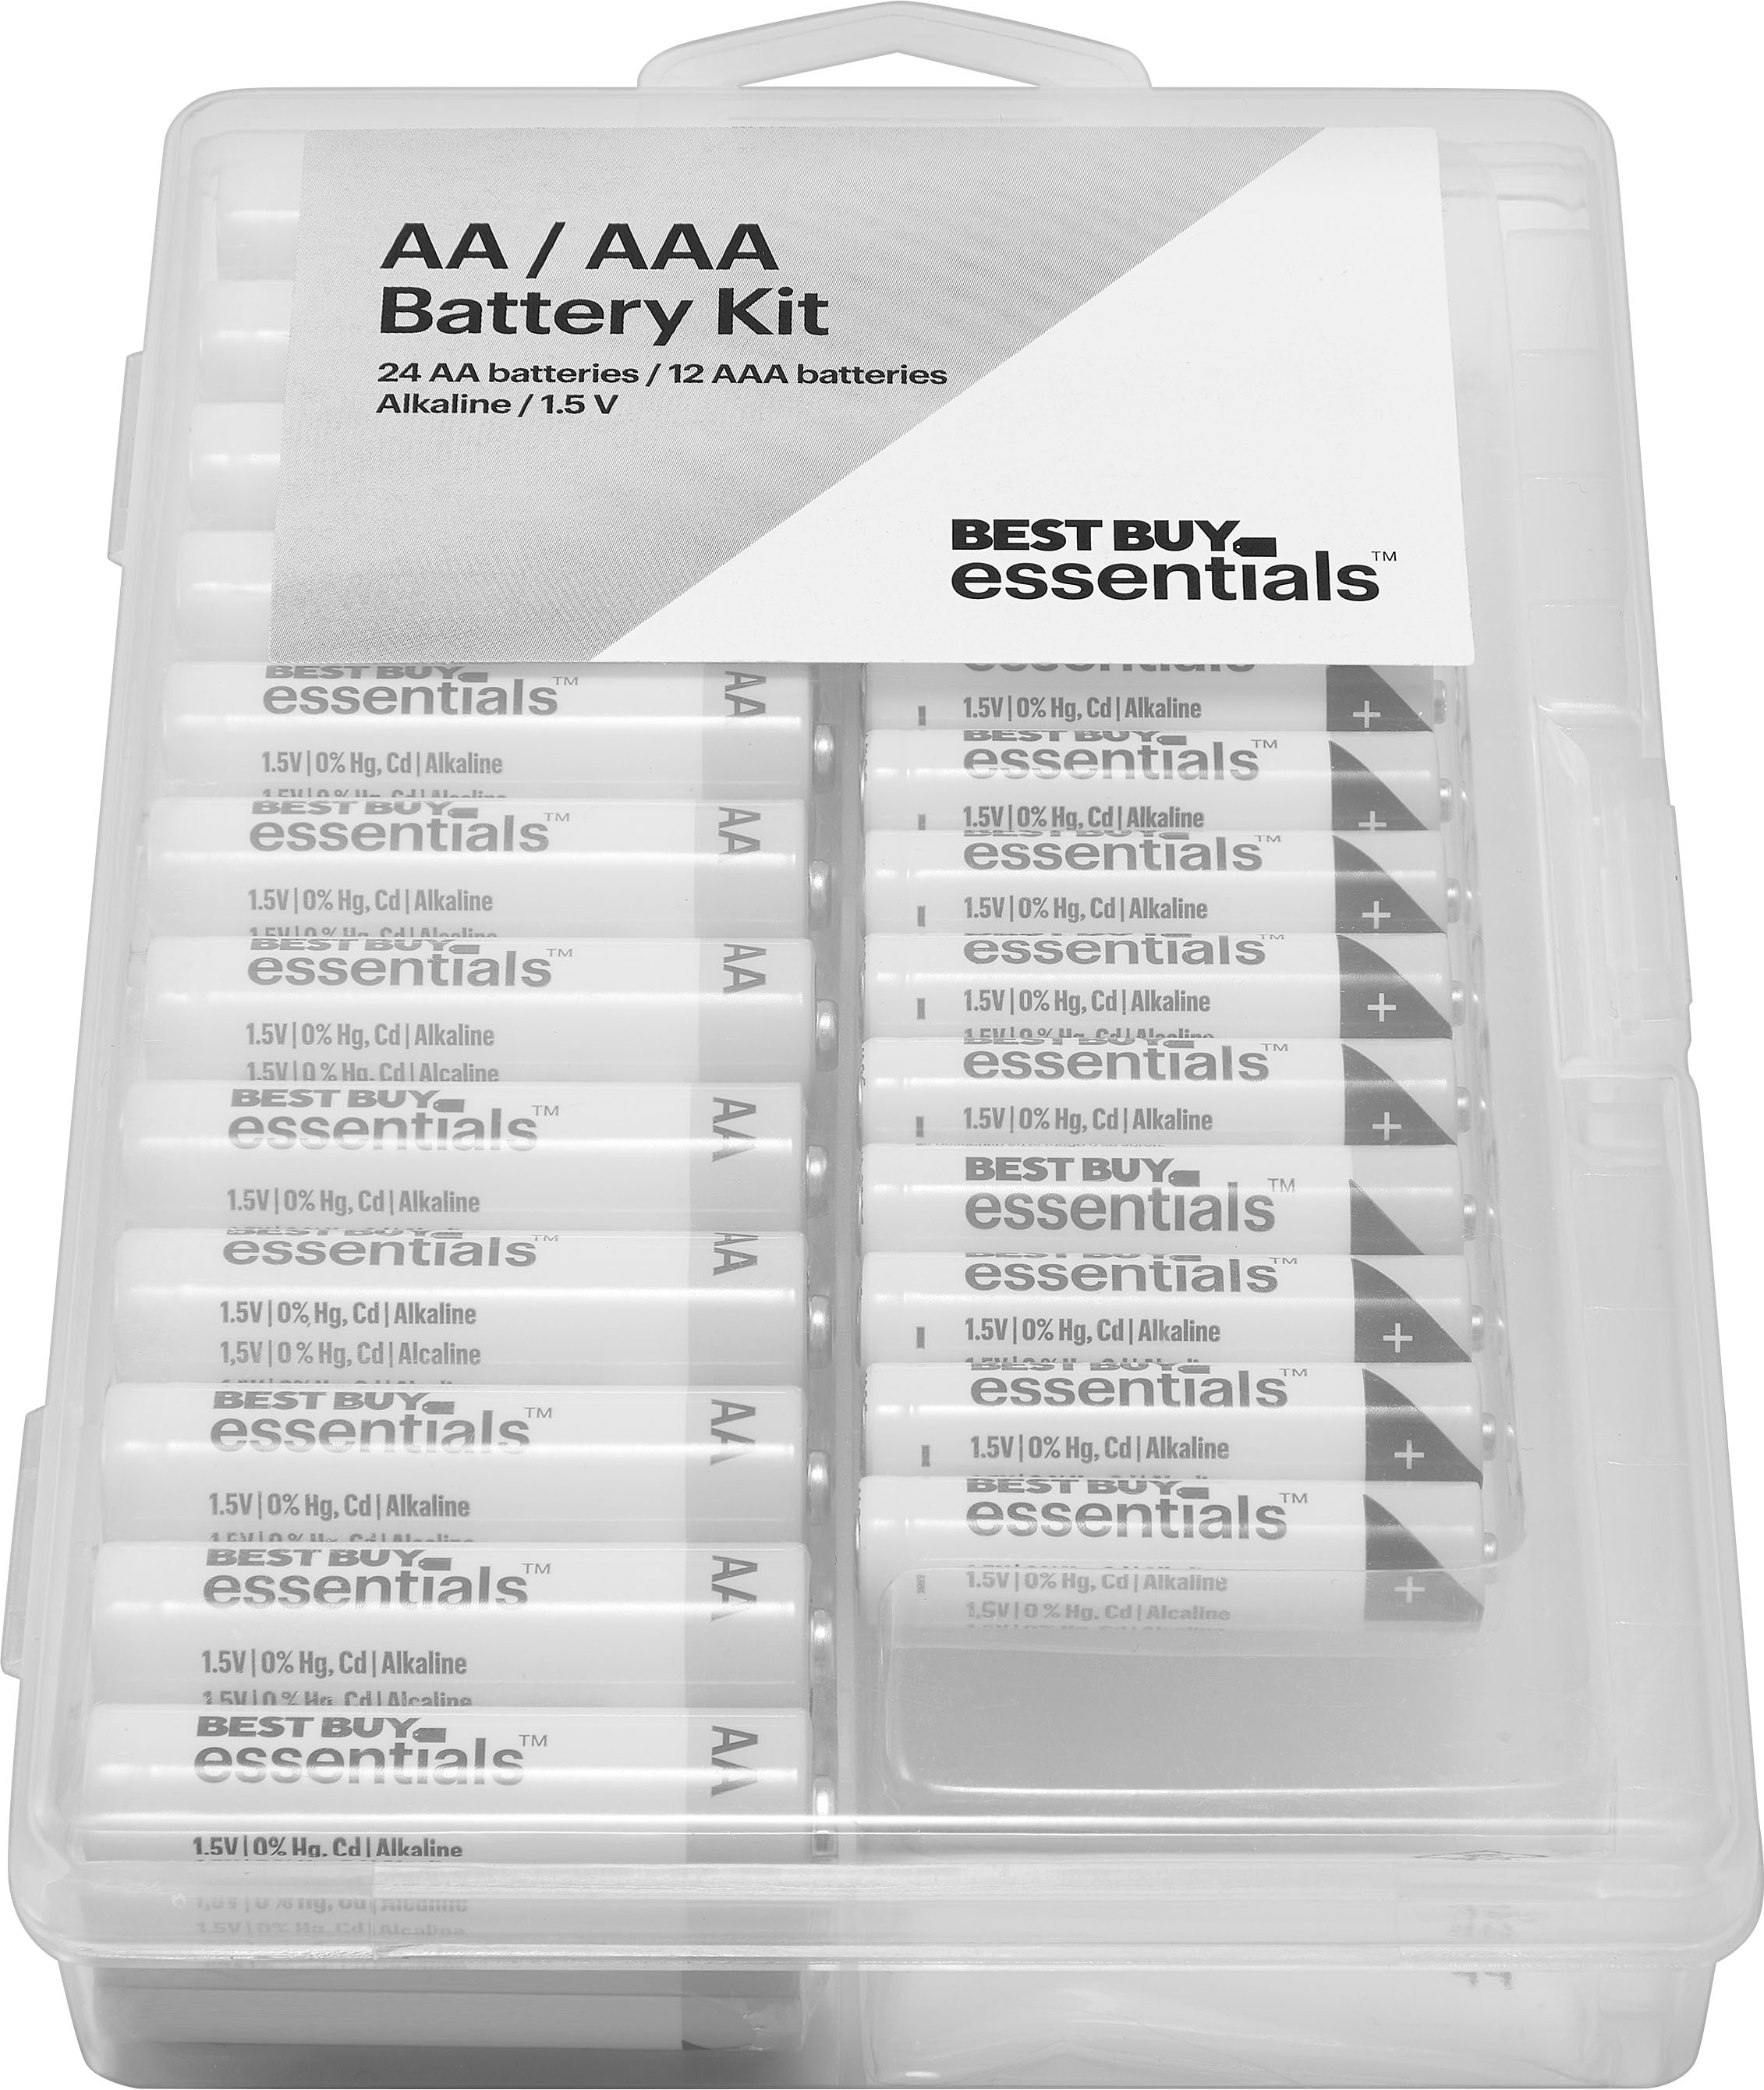 jord købe Fremkald Best Buy essentials™ AA / AAA Batteries (36-Pack) BE-B36Kit - Best Buy